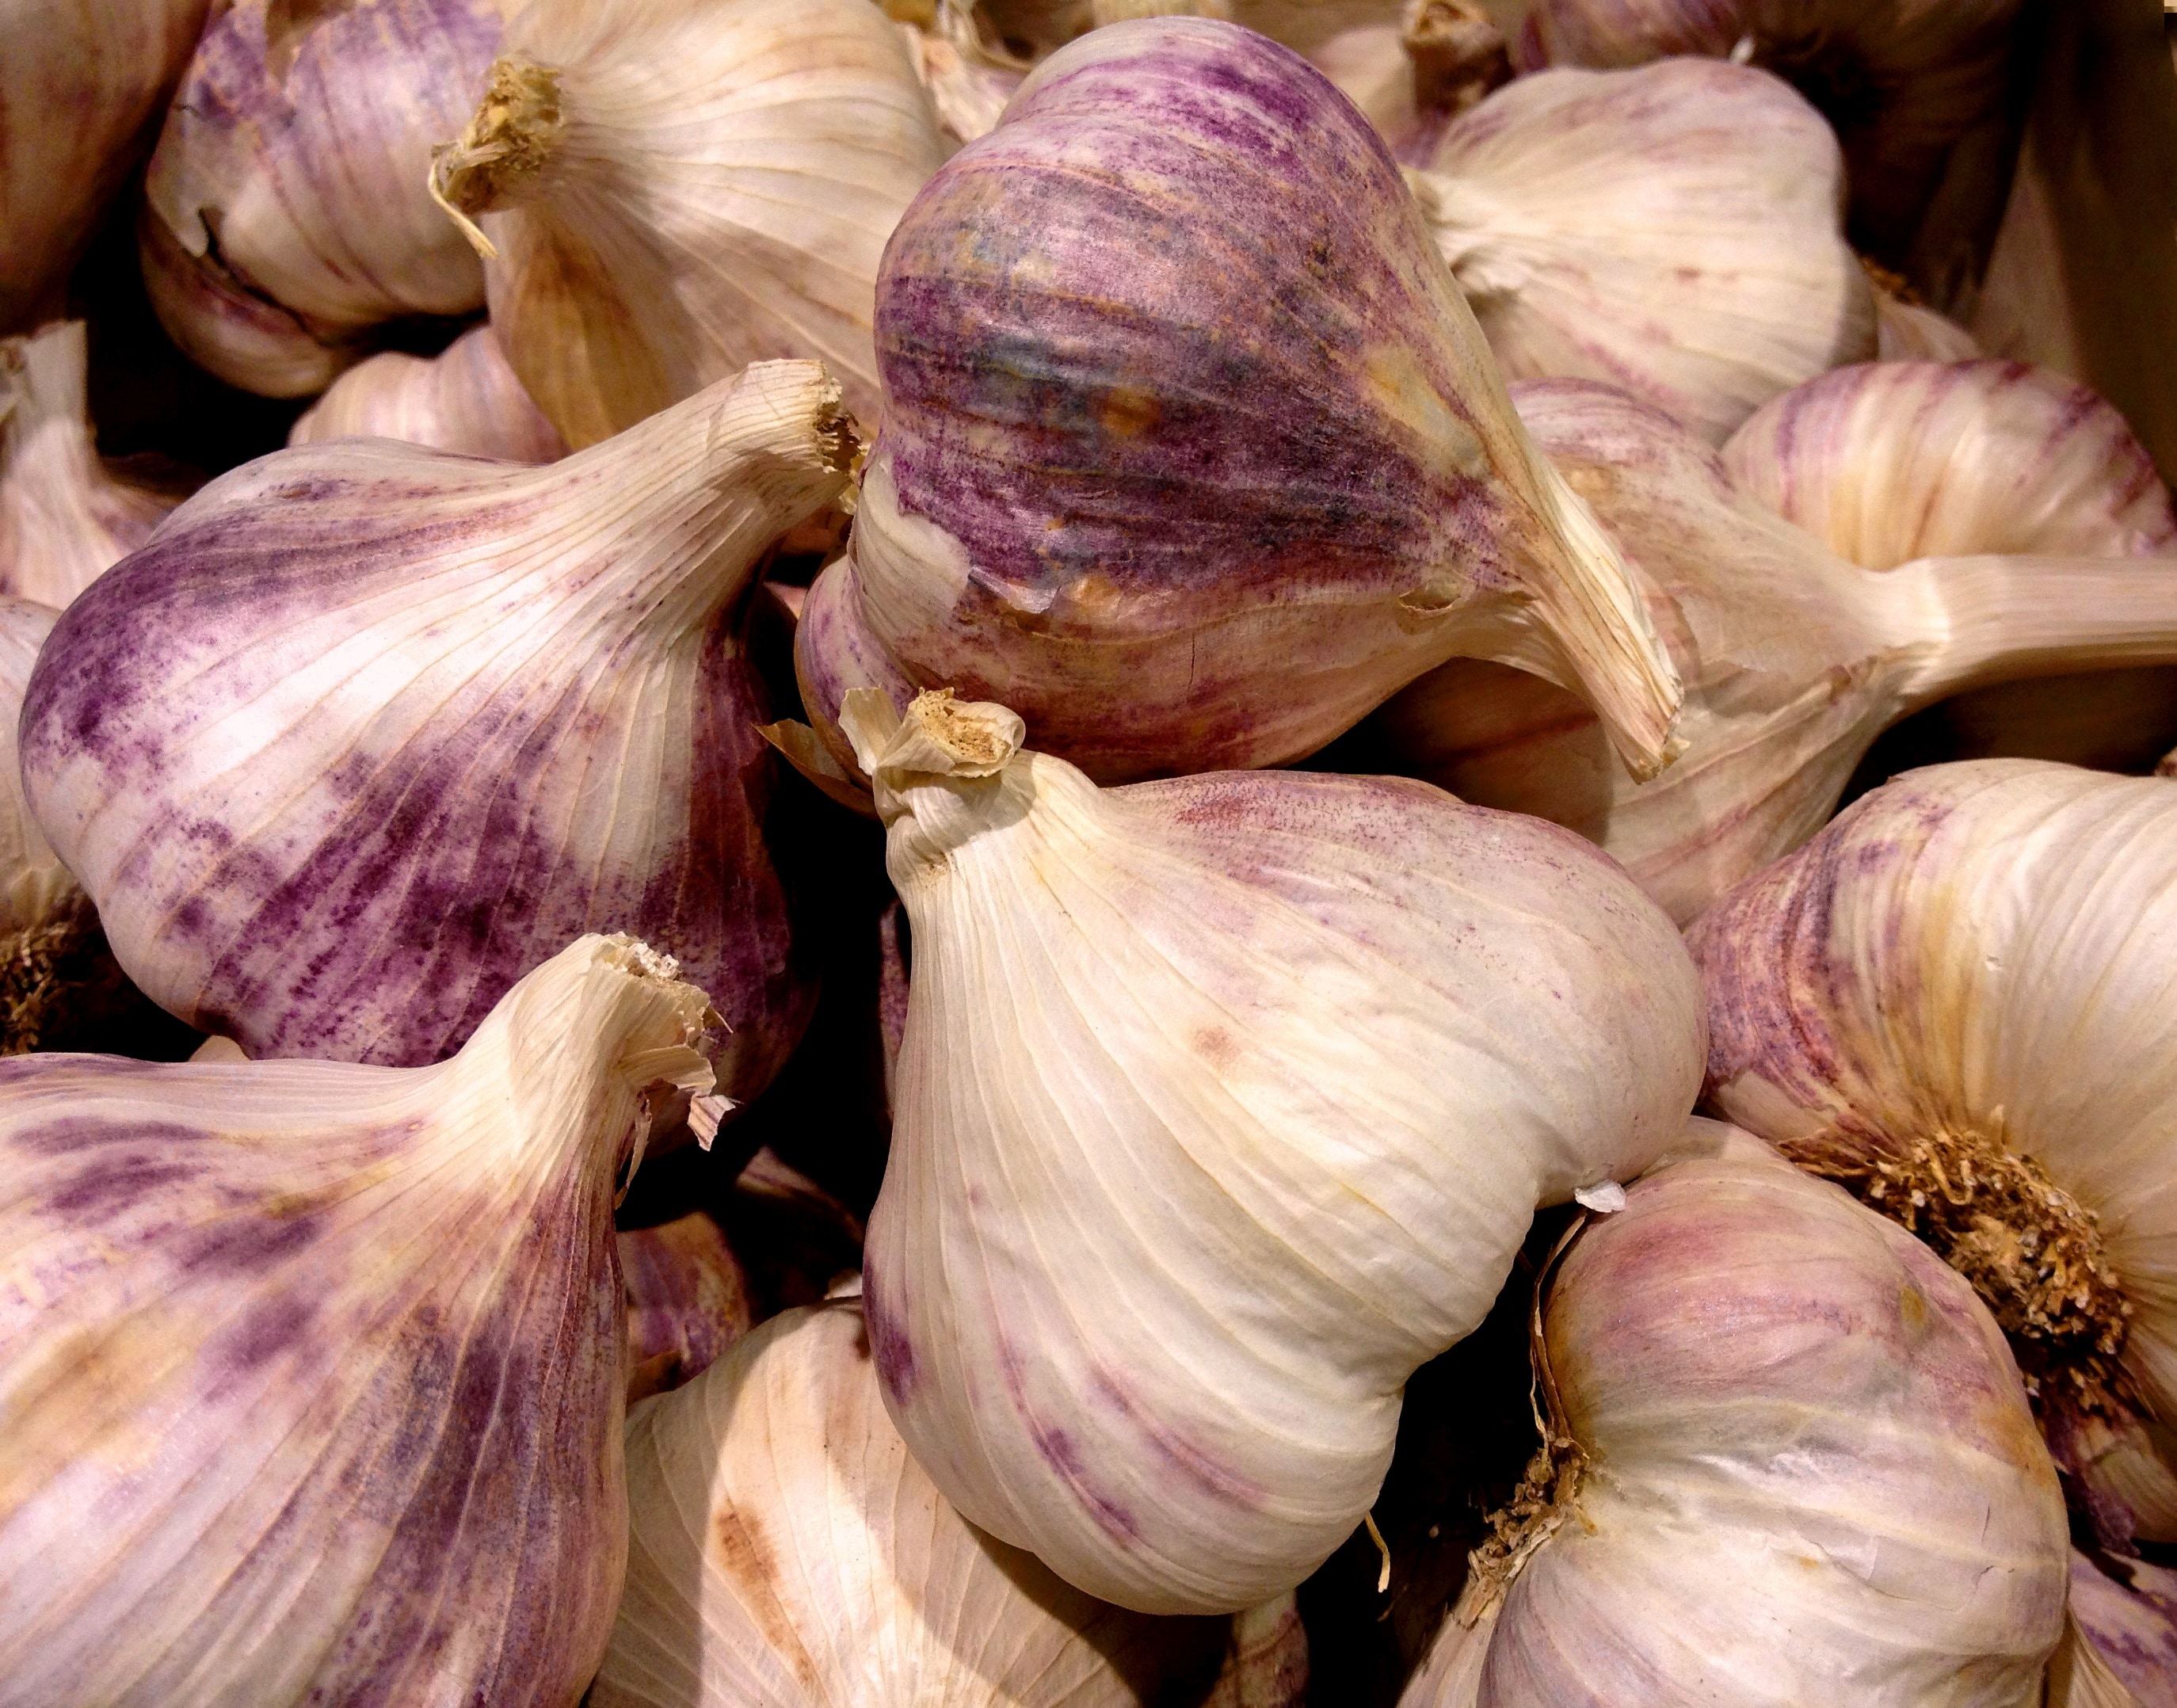 purple and white garlic